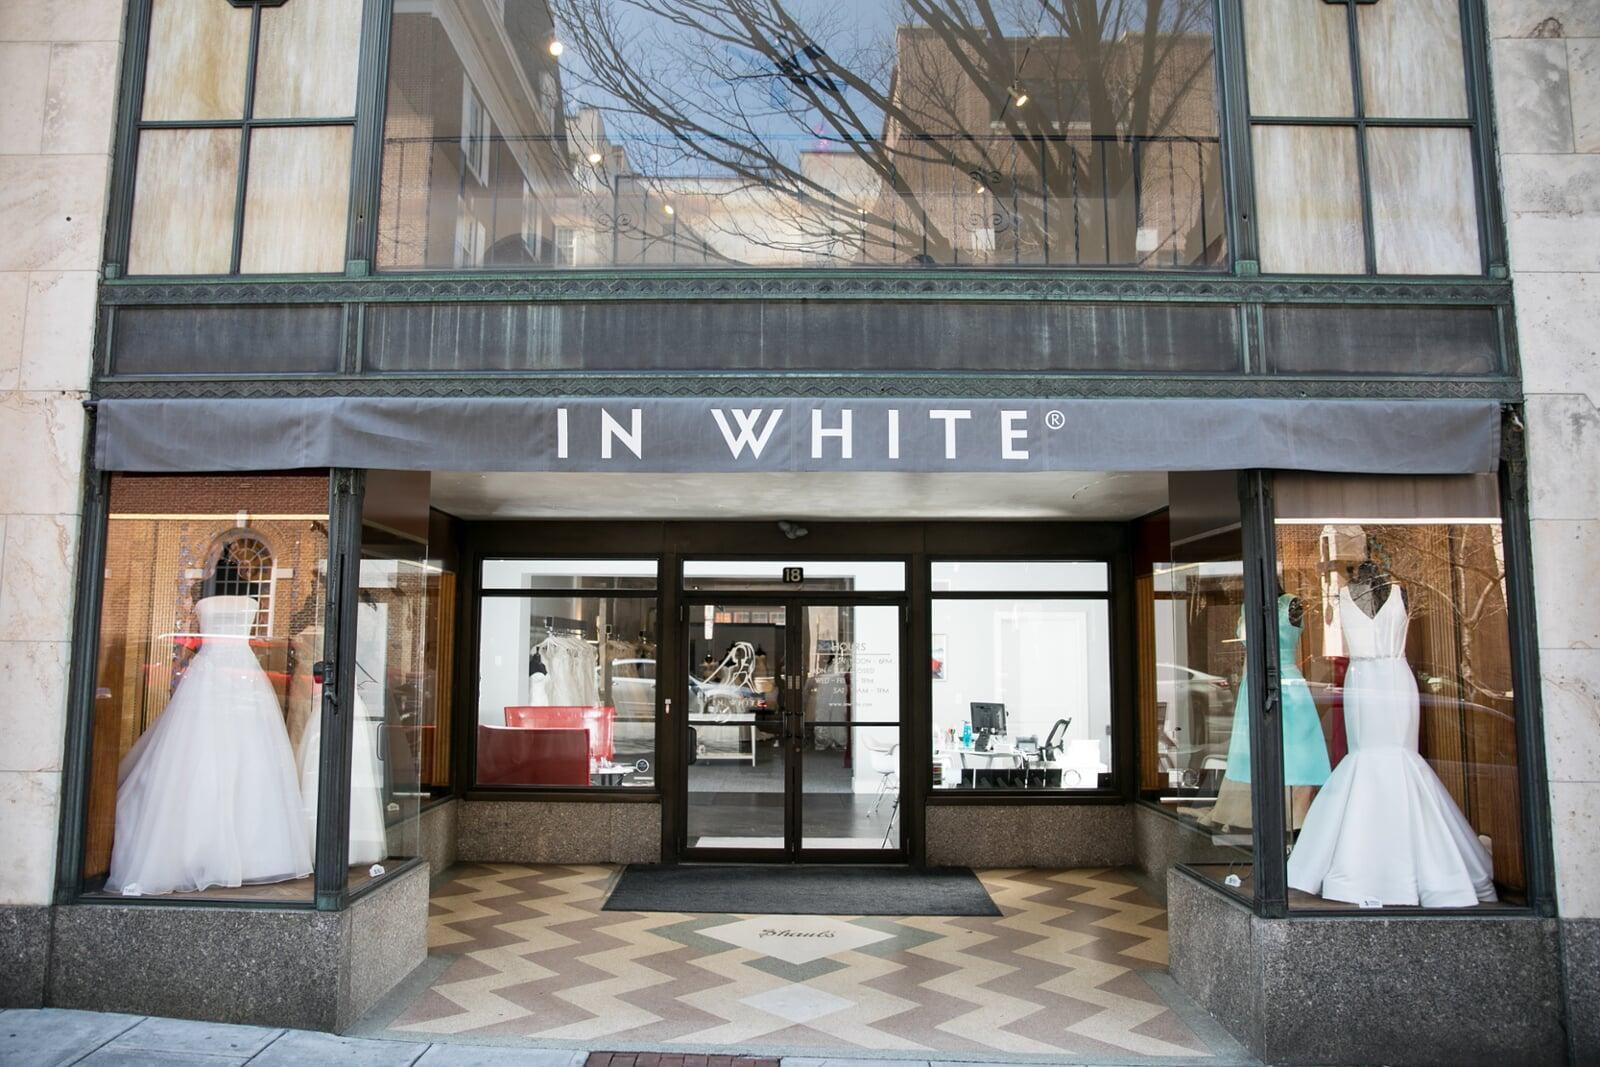 https://www.inwhite.com/images/In-White-Storefront-Full.JPG